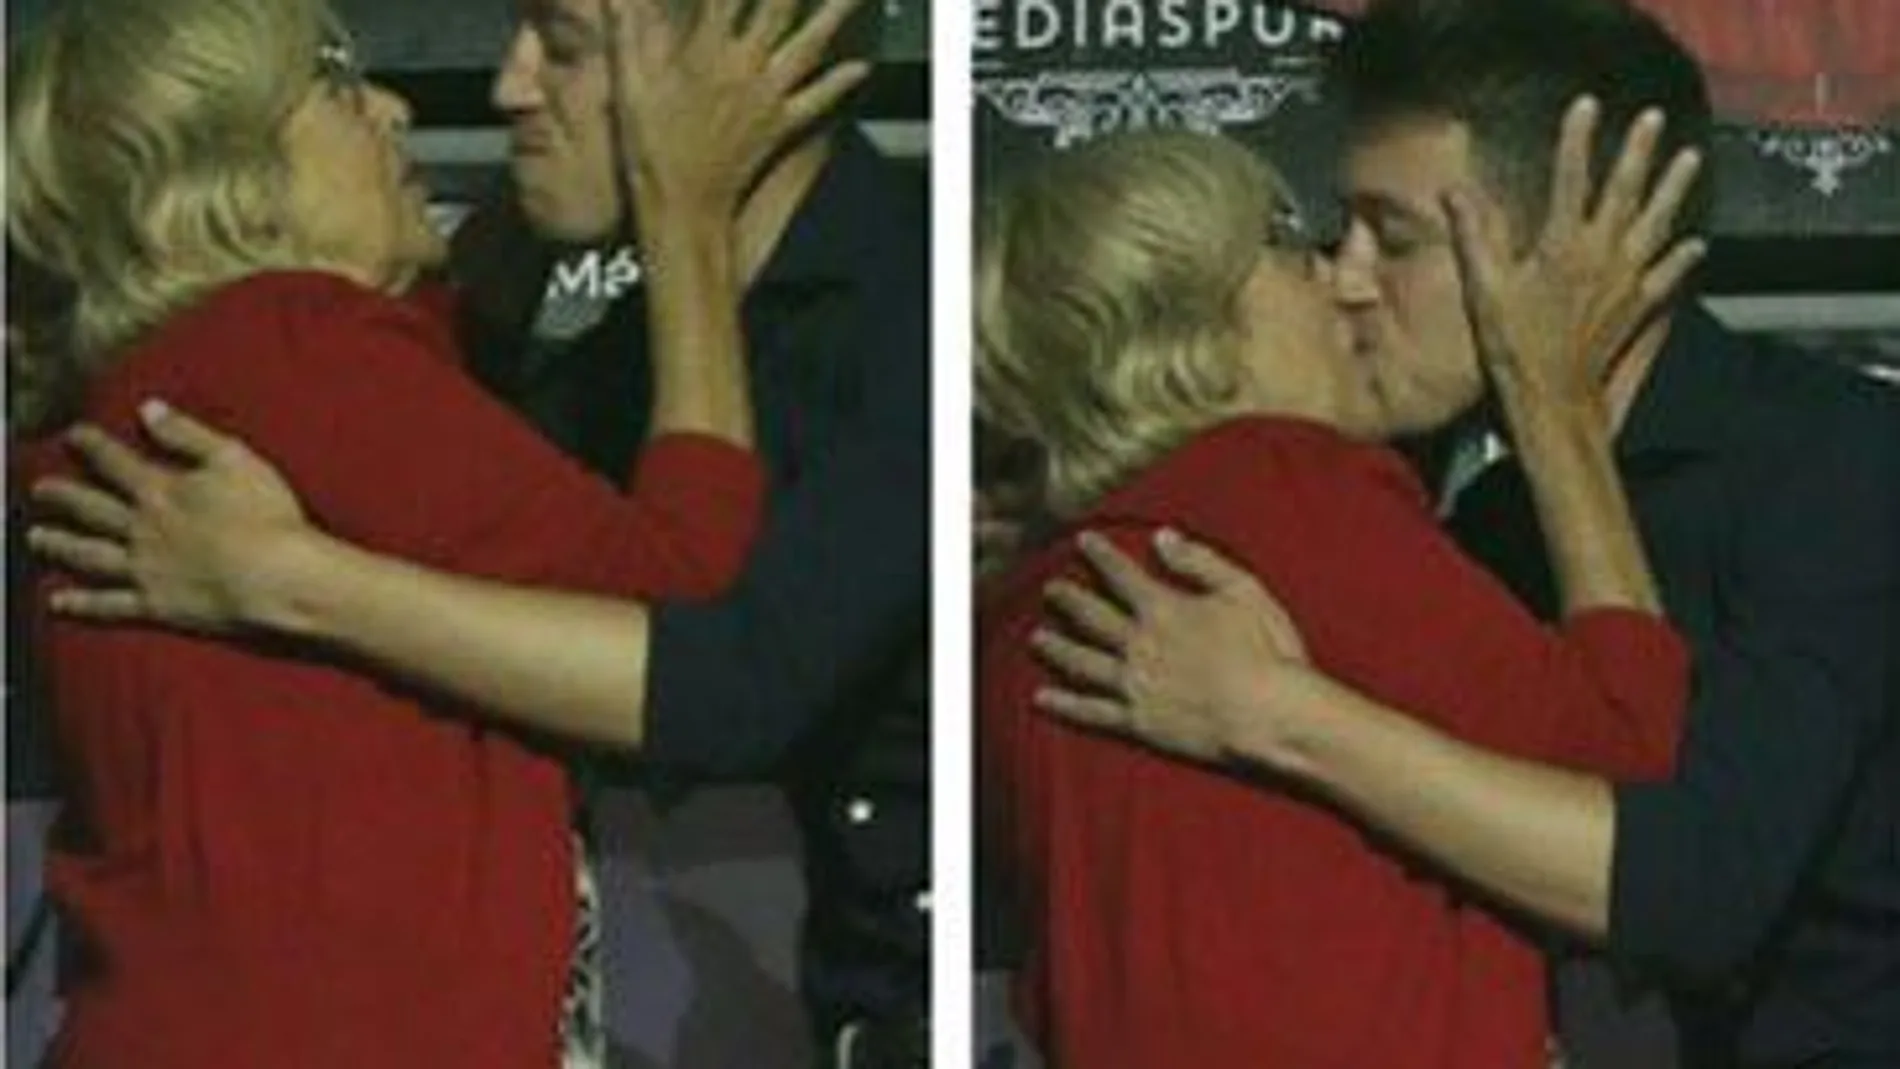 Carmena y Errejón se besaron en la boca durante el acto de Más Madrid en la discoteca Medias Puri / Twitter